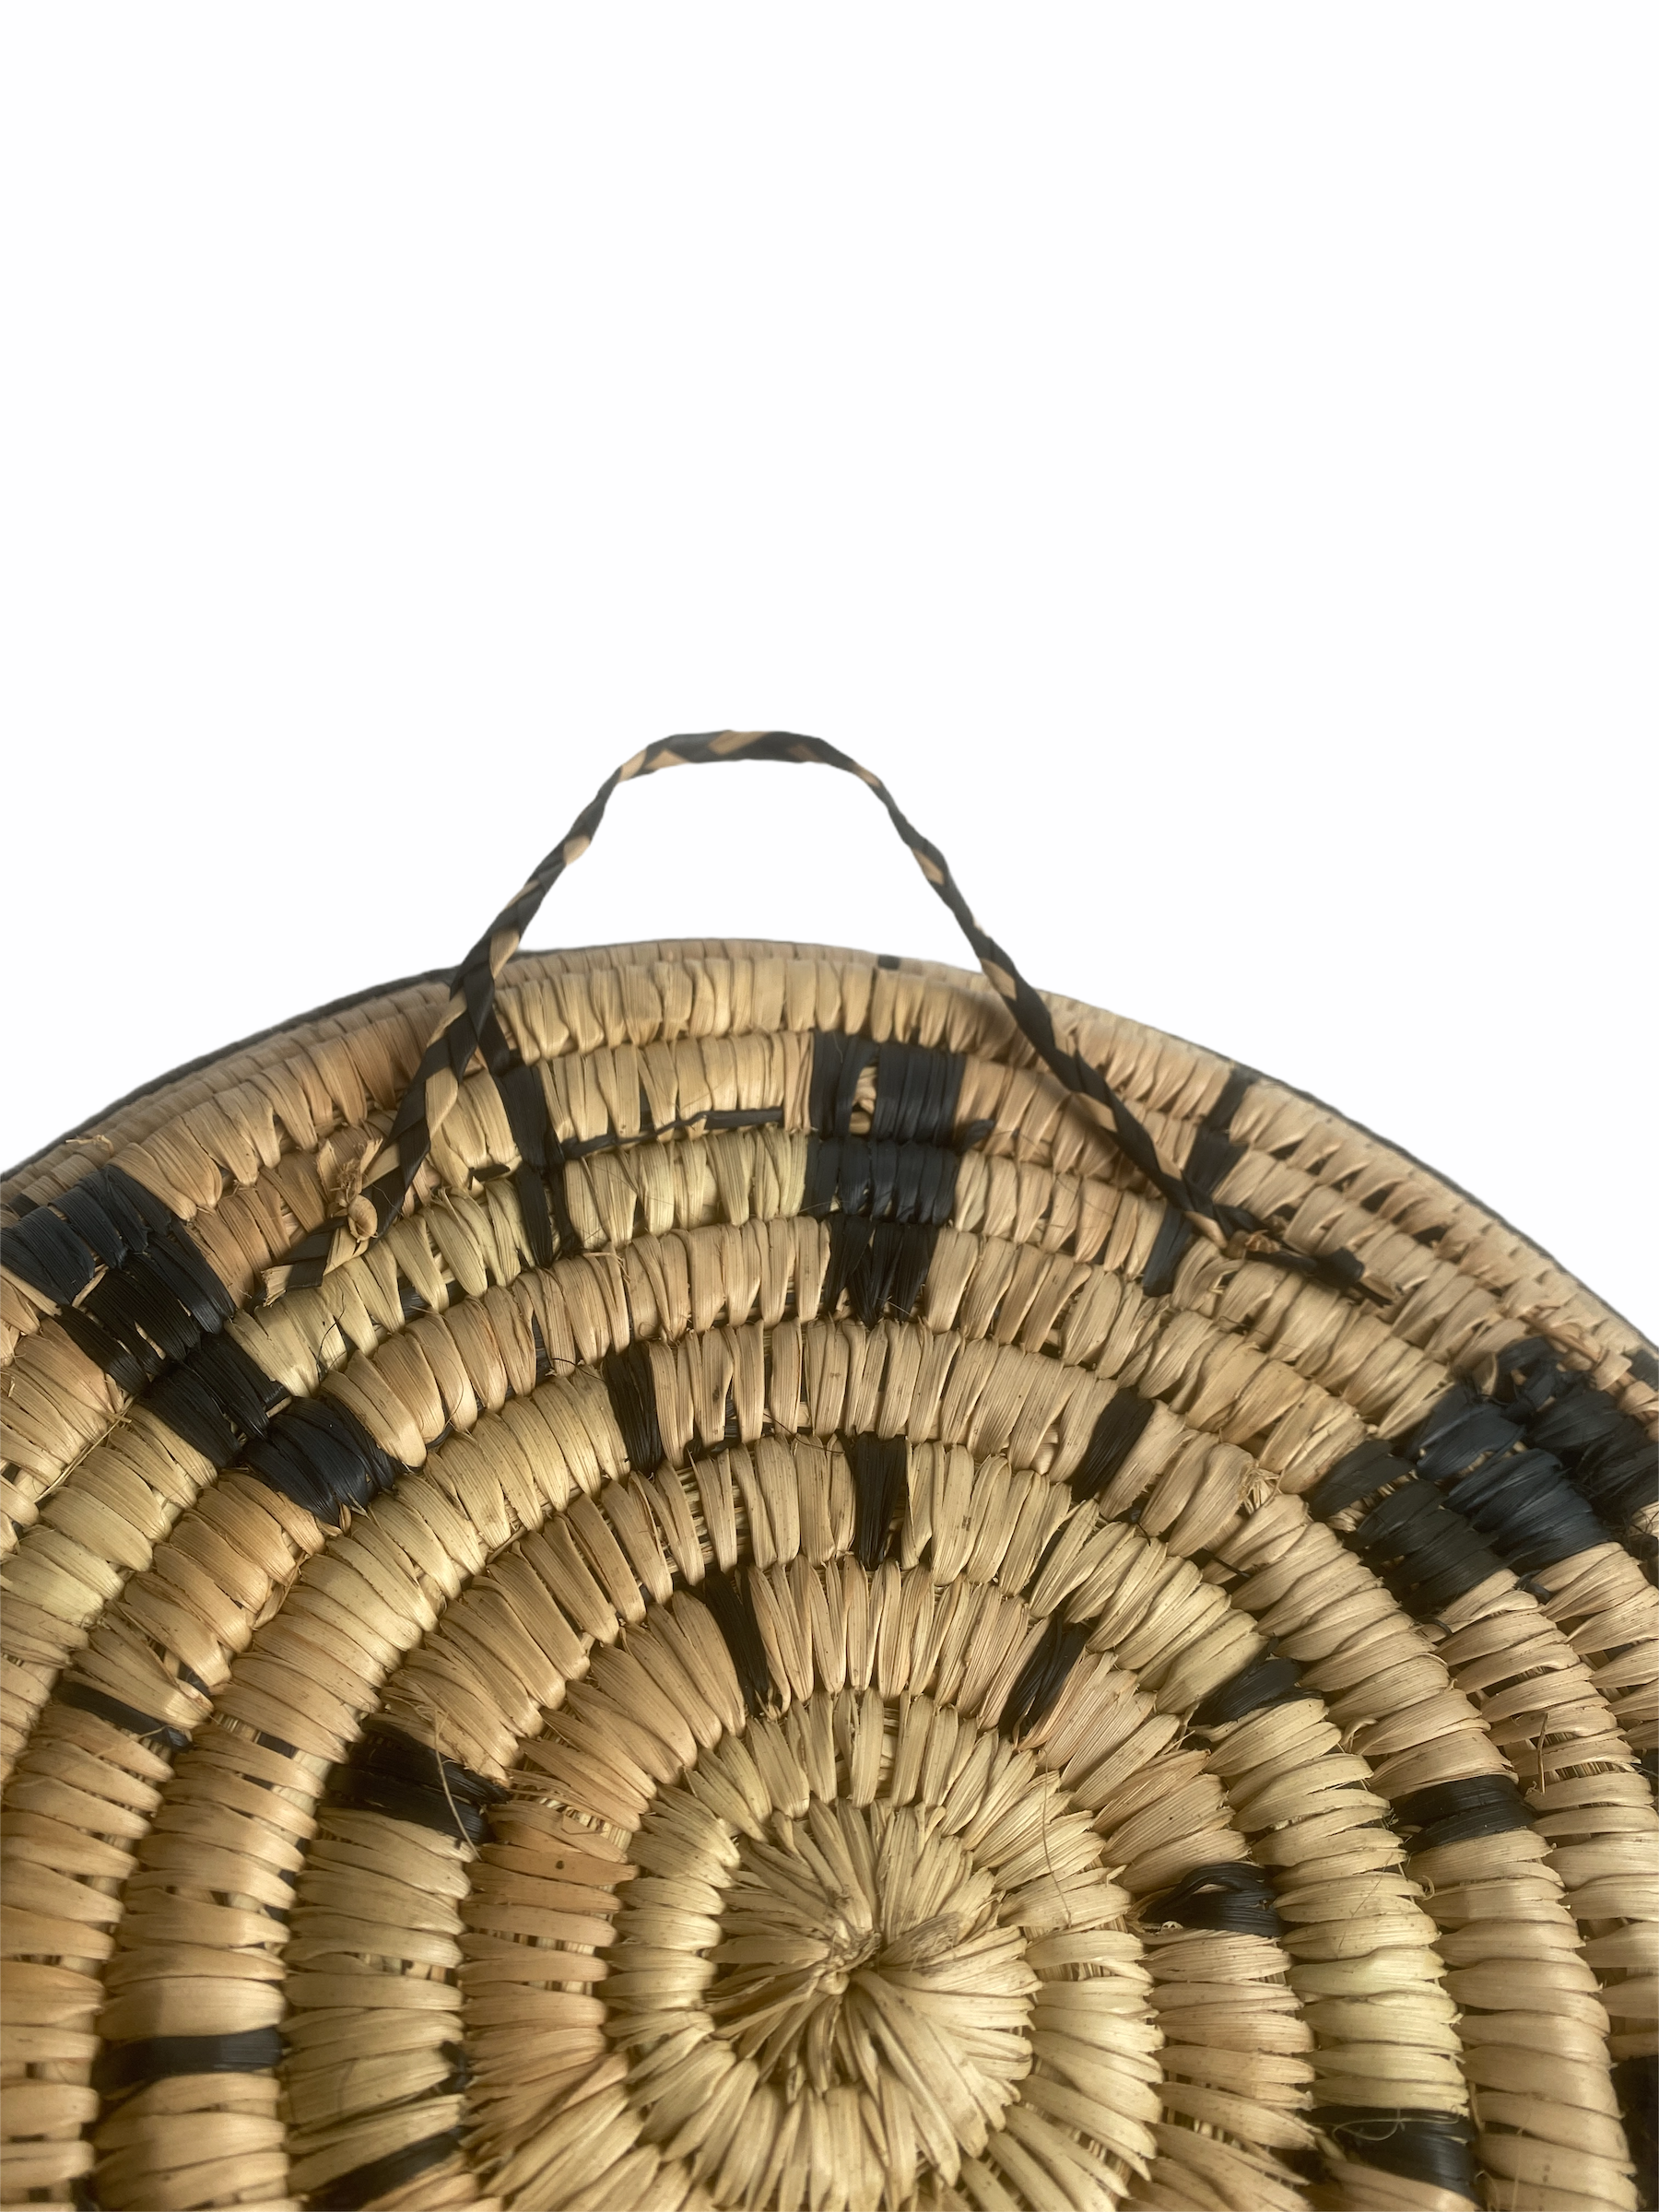 Malawi Wall Basket - 30cm